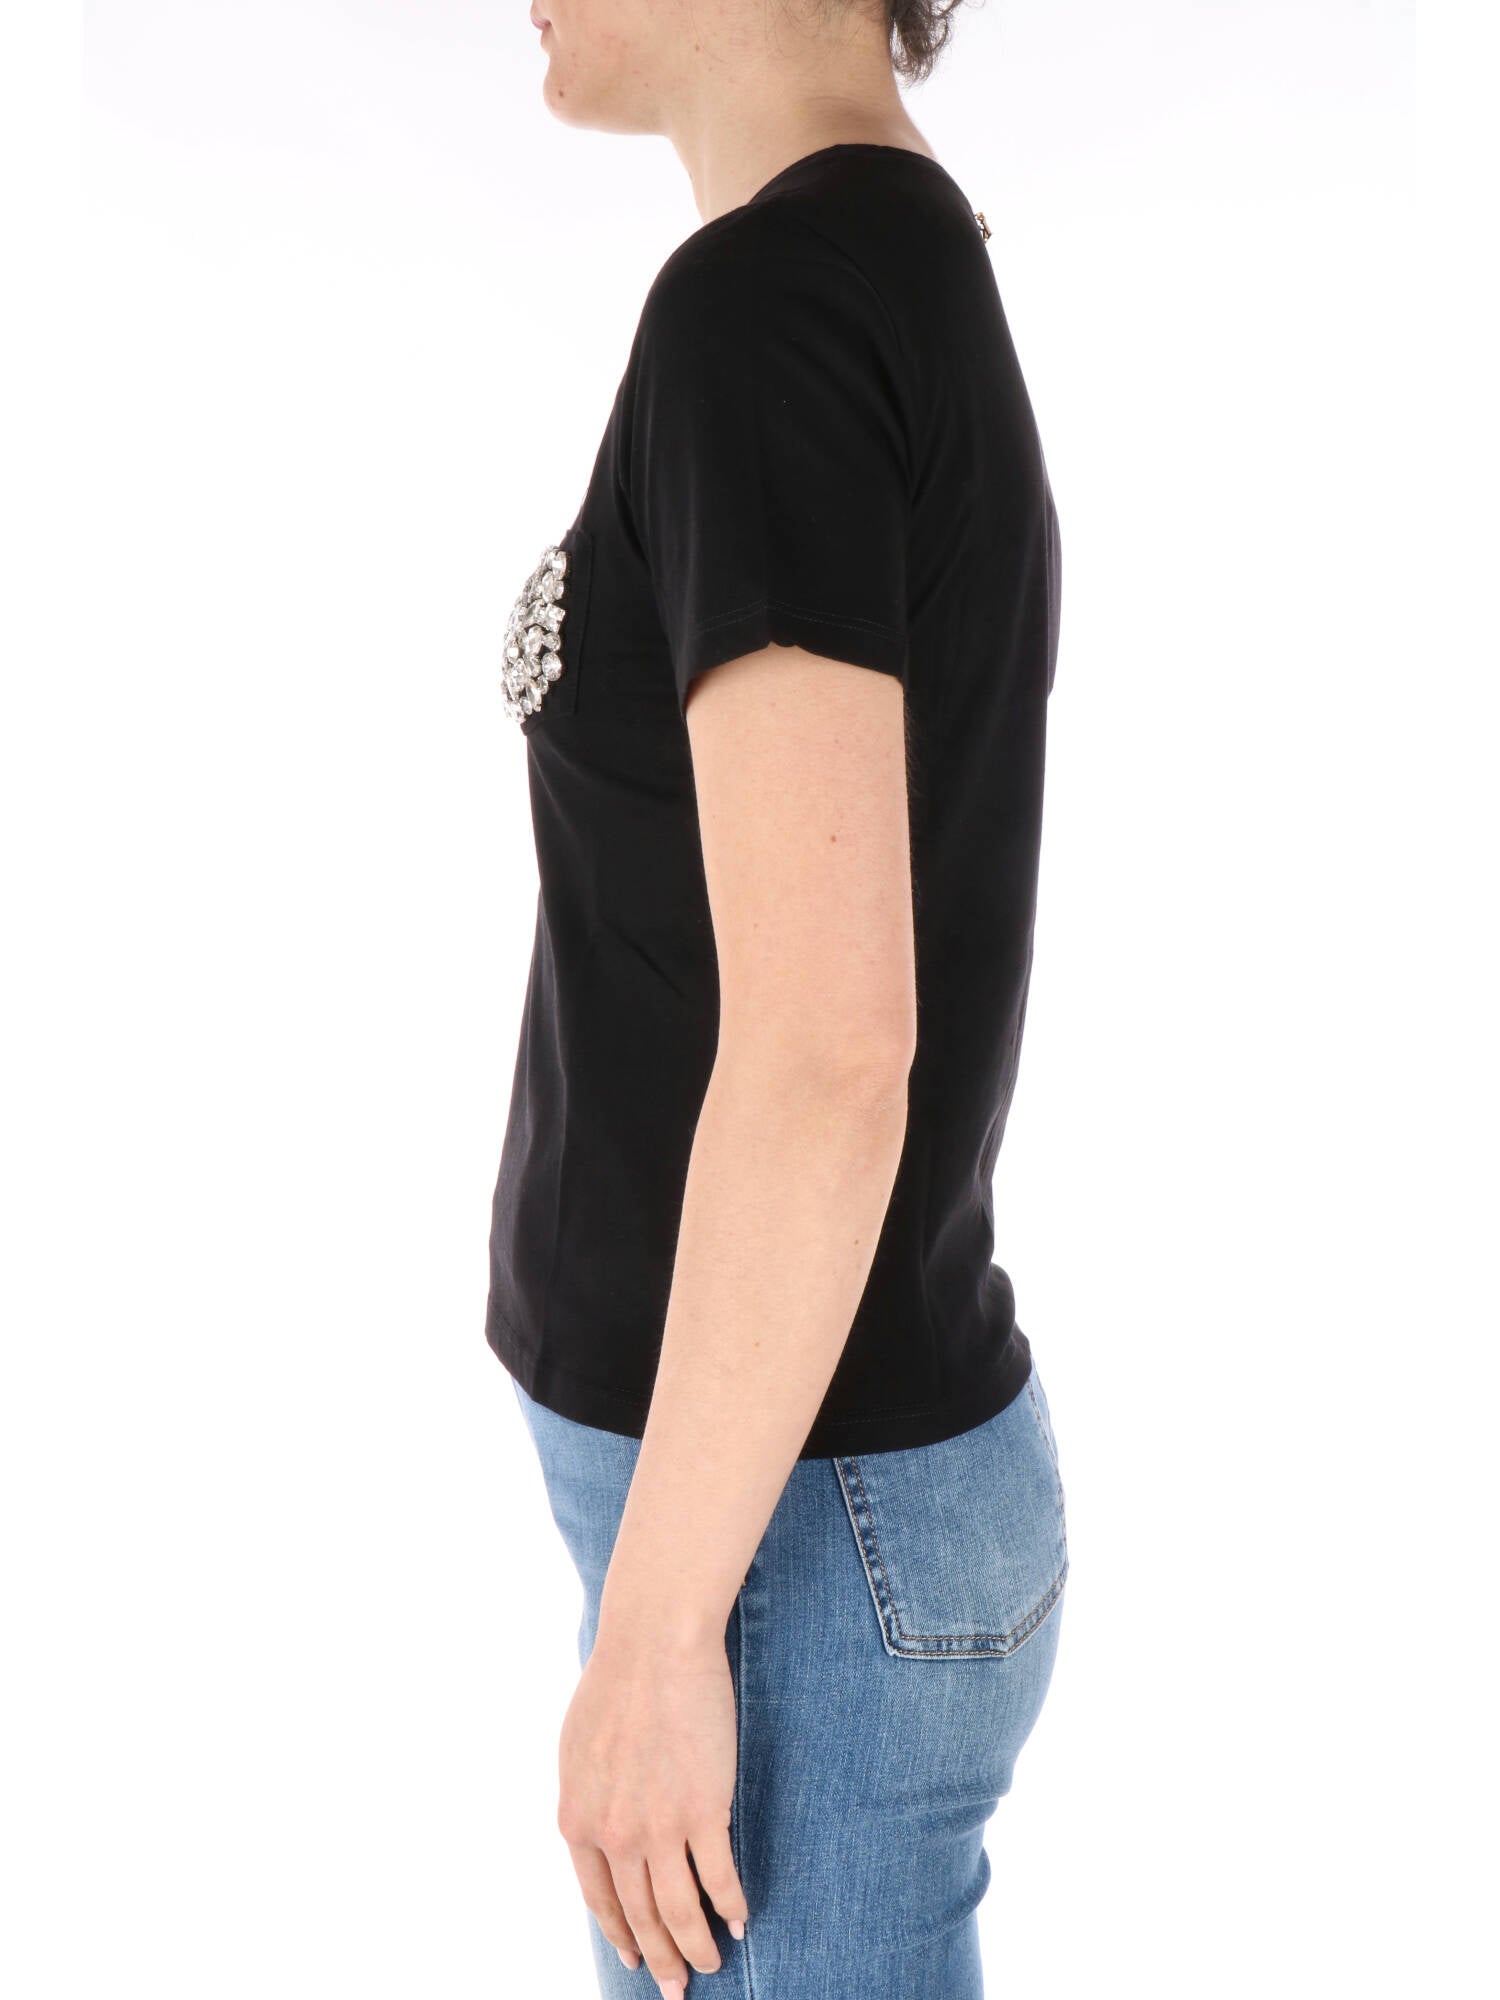 Kocca t-shirt nera con applicazione di strass